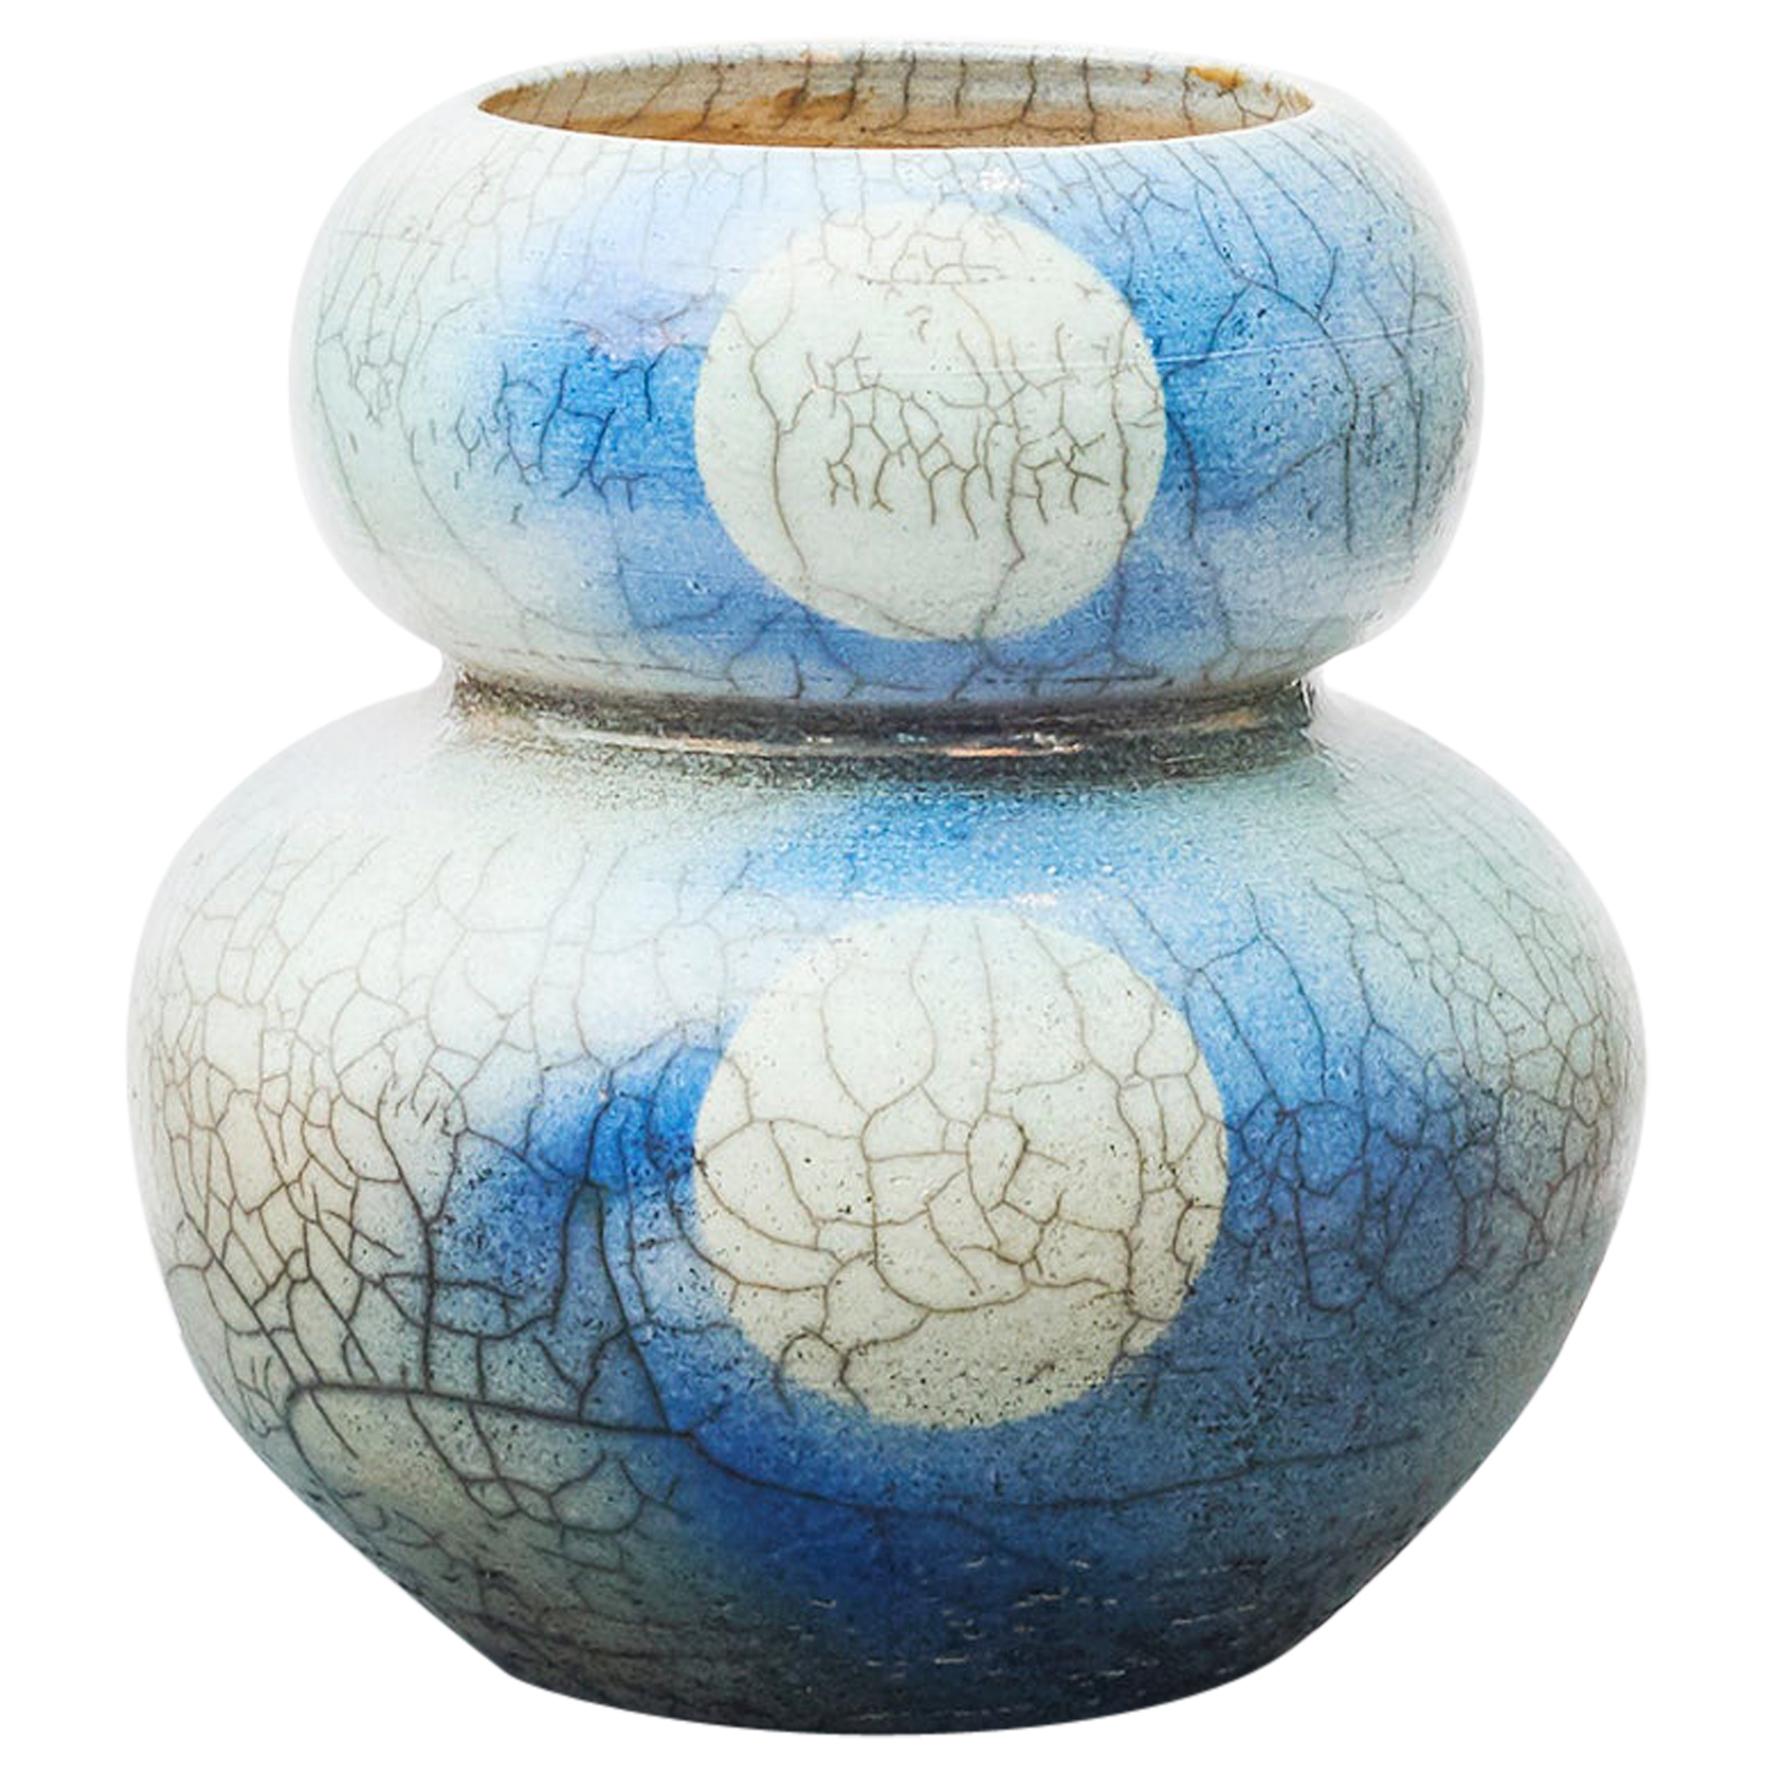 Japanische Raku-Keramikvase in Blau und Grau, gestempelt mit Monogramm